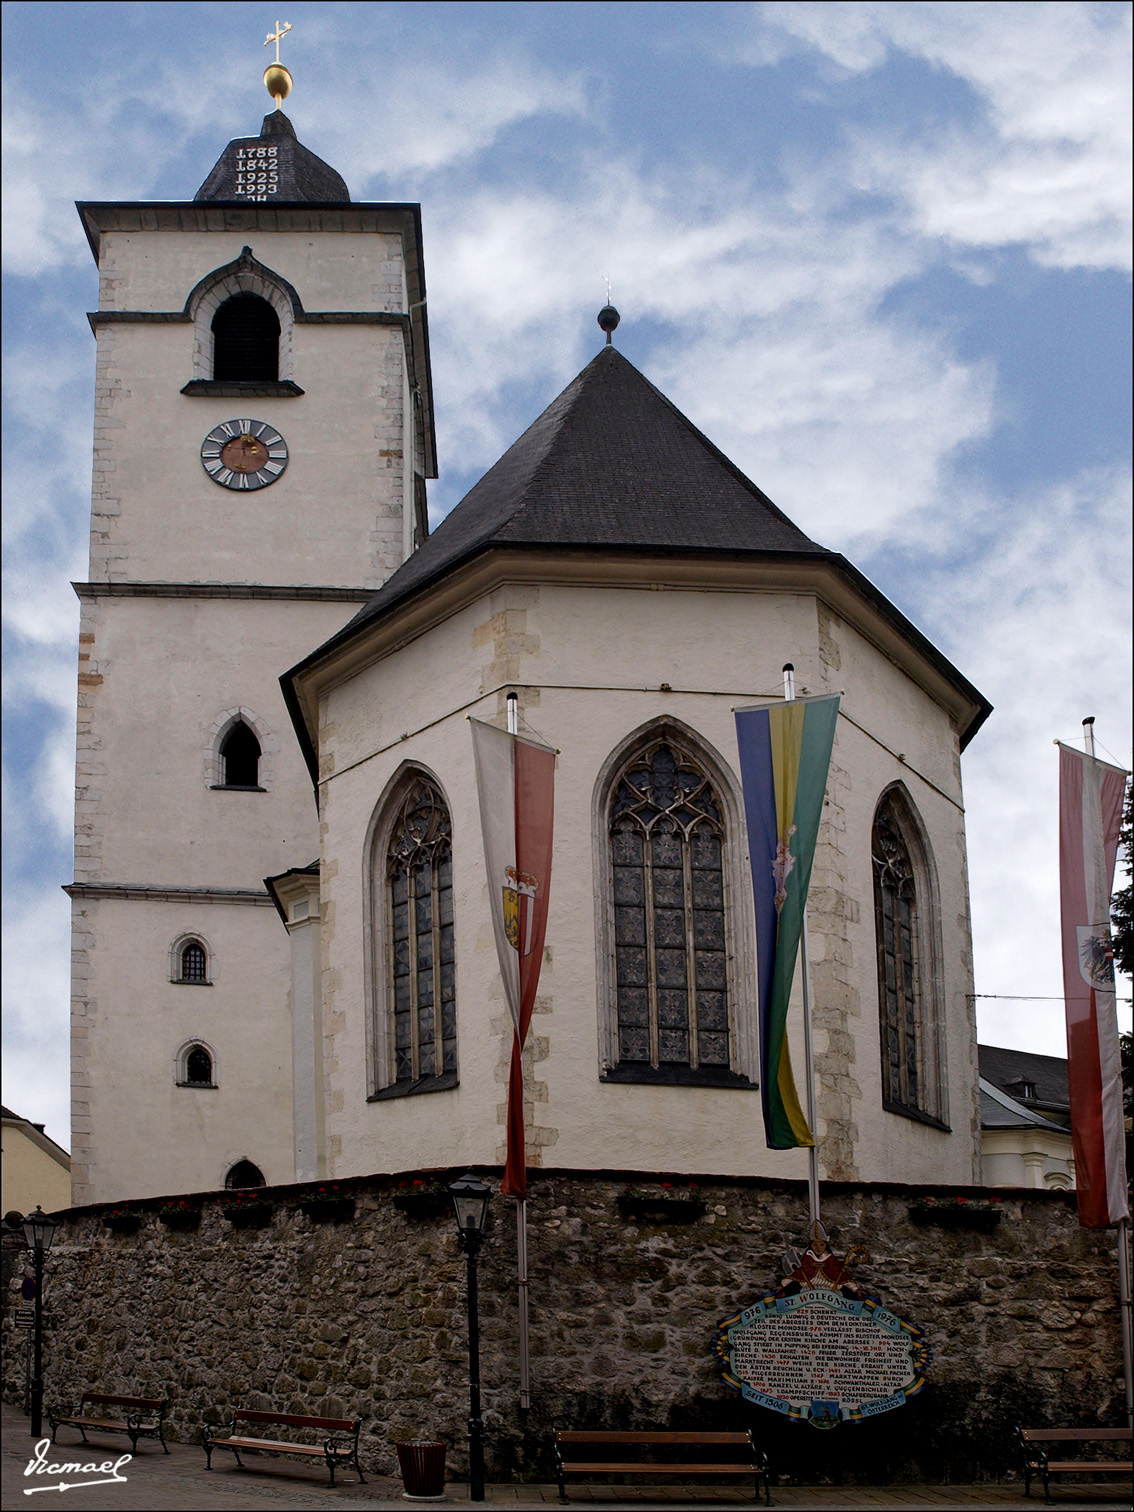 Foto: 110504-233  SAINT WOLFGANG - Saint Wolfgang (Salzburg), Austria